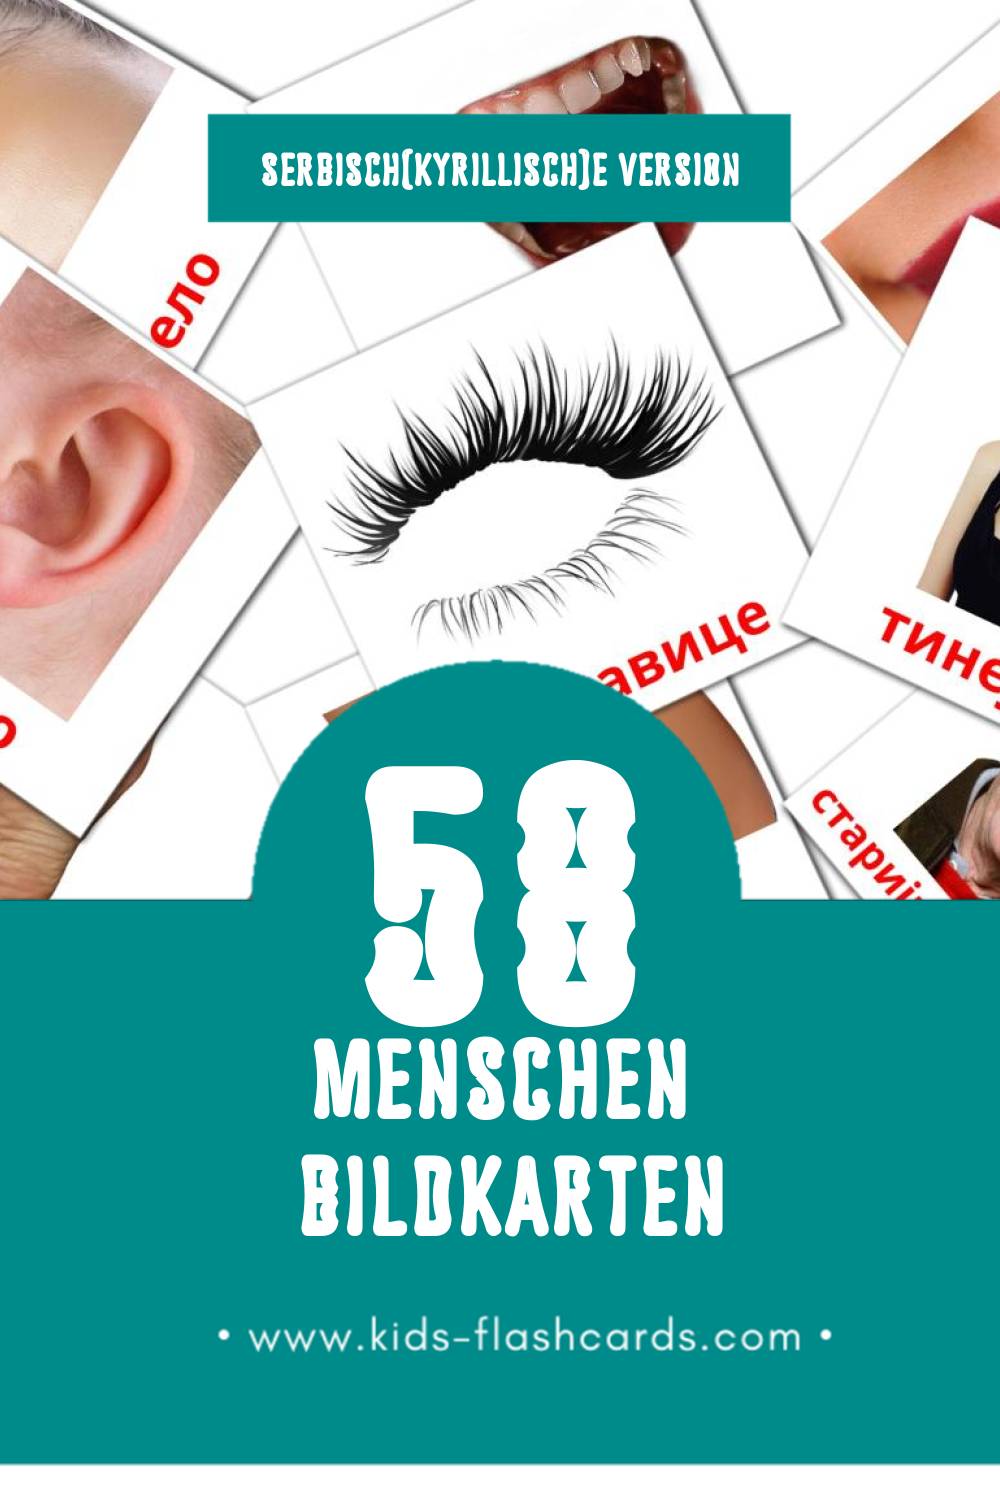 Visual Људи Flashcards für Kleinkinder (58 Karten in Serbisch(kyrillisch))